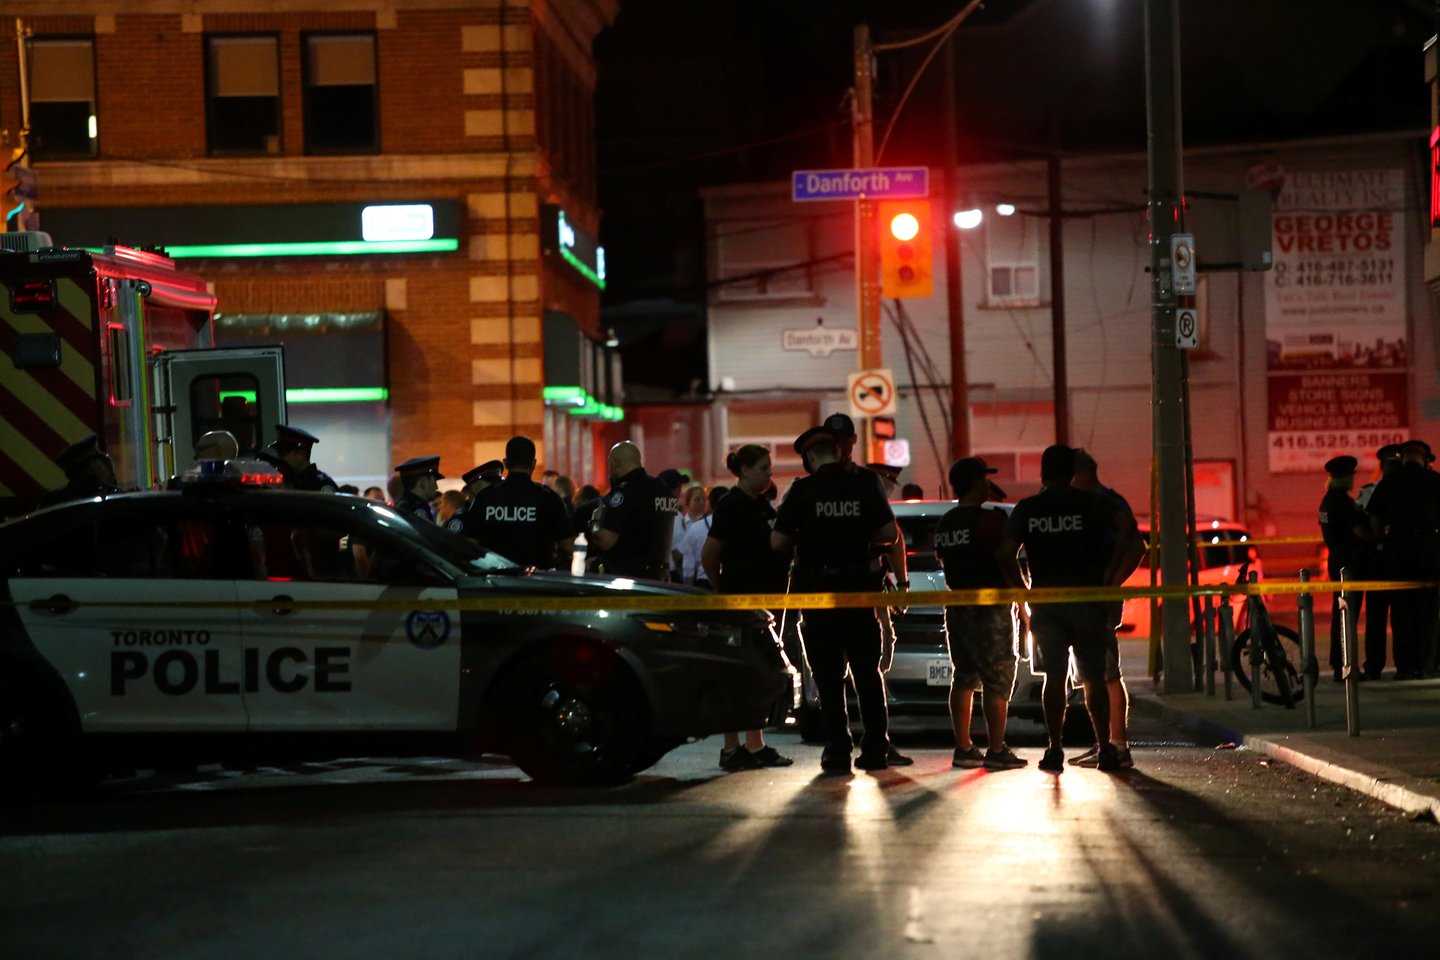  Kanados didžiausiame Toronto mieste sekmadienį vakare šaudė užpuolikas – sužeisti devyni žmonės, įskaitant vaiką, pranešė policija.<br> Reuters/Scanpix nuotr.